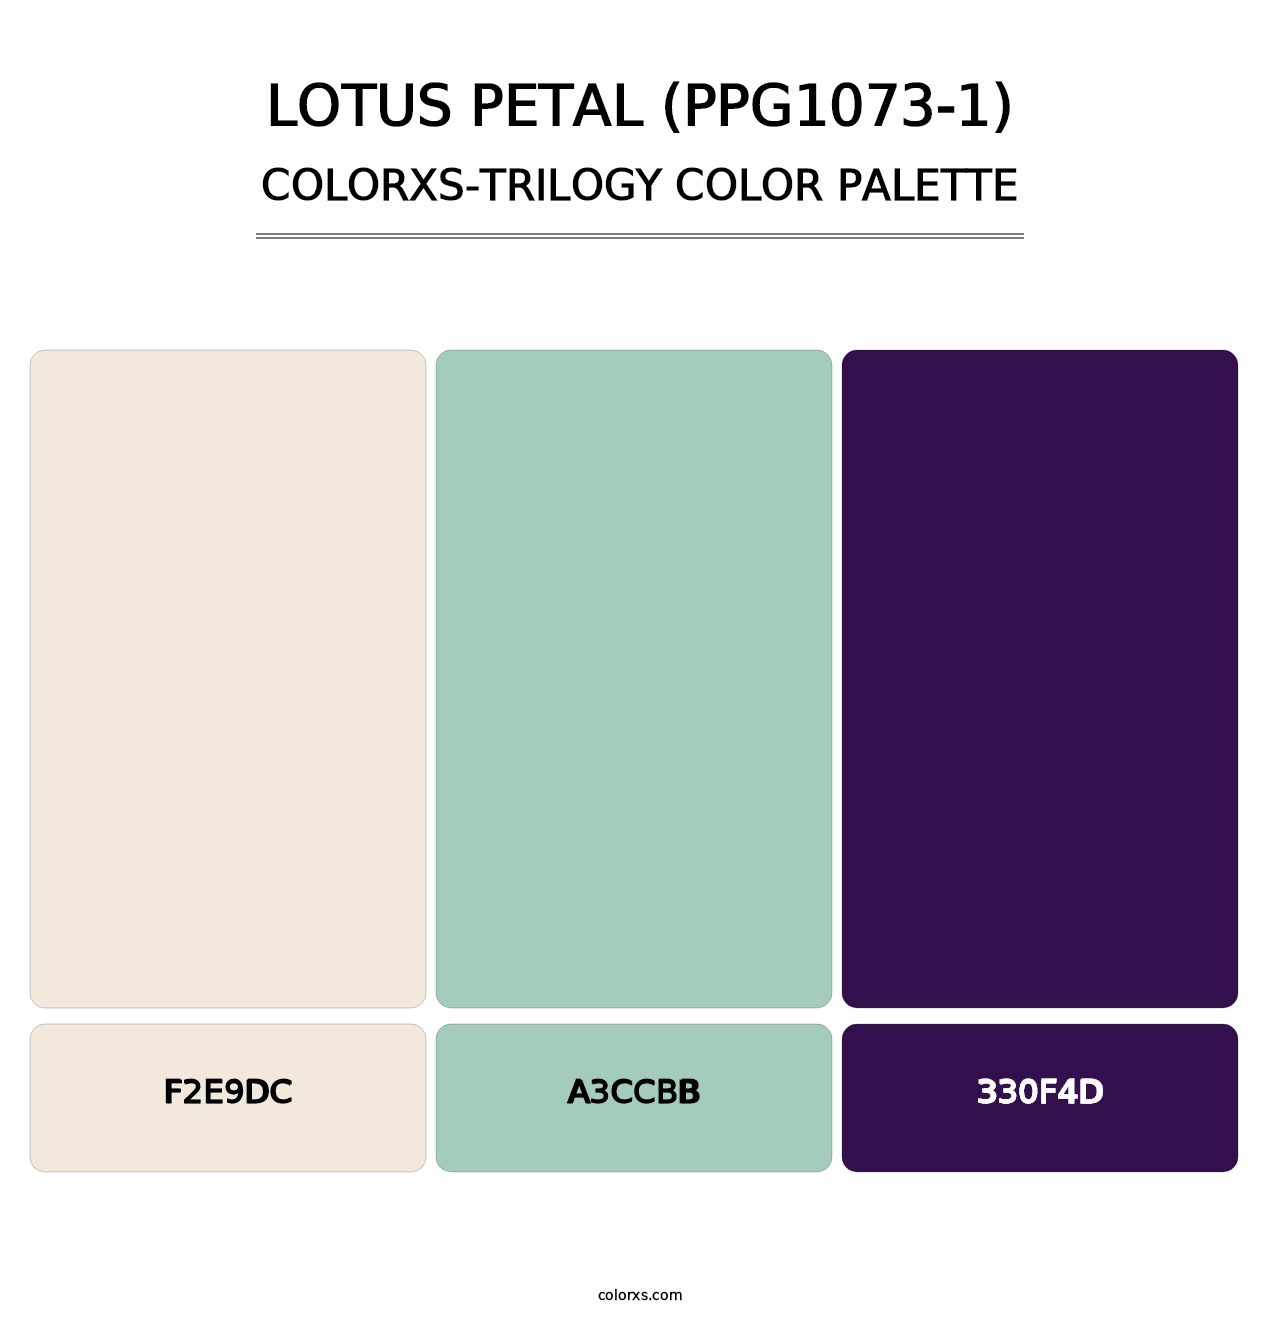 Lotus Petal (PPG1073-1) - Colorxs Trilogy Palette